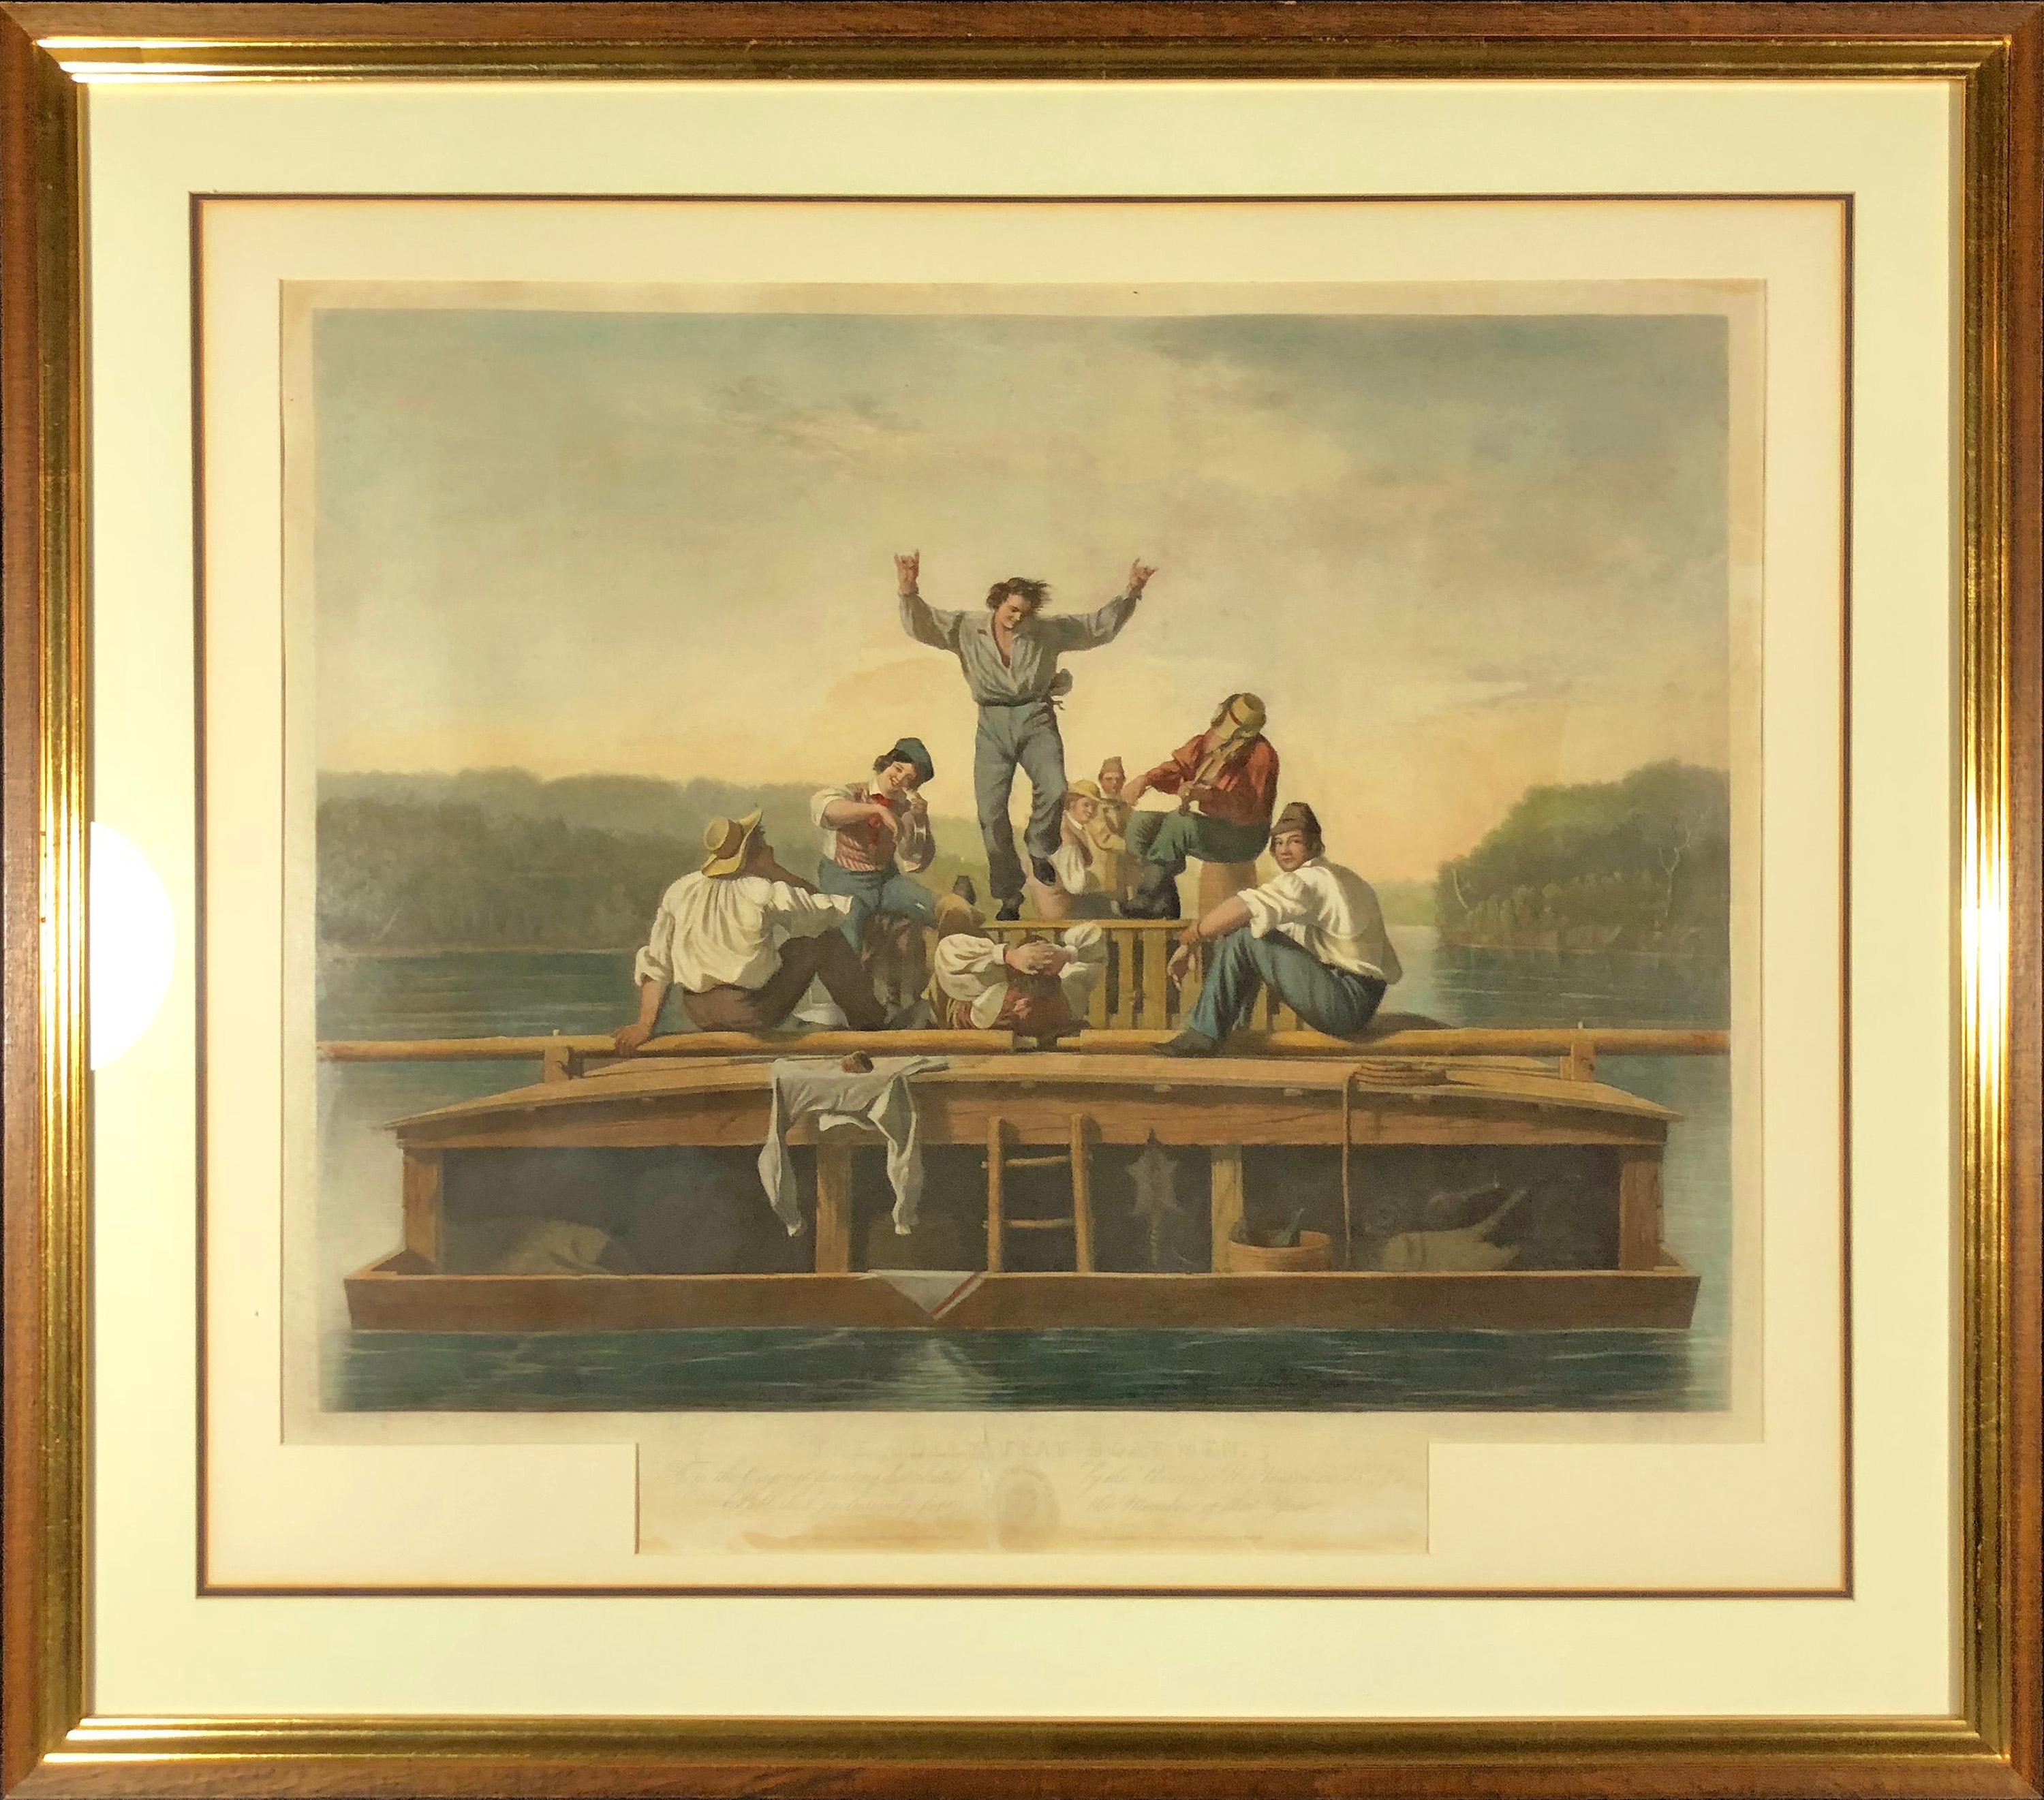 The Jolly Flatboatmen - Print by George Caleb Bingham